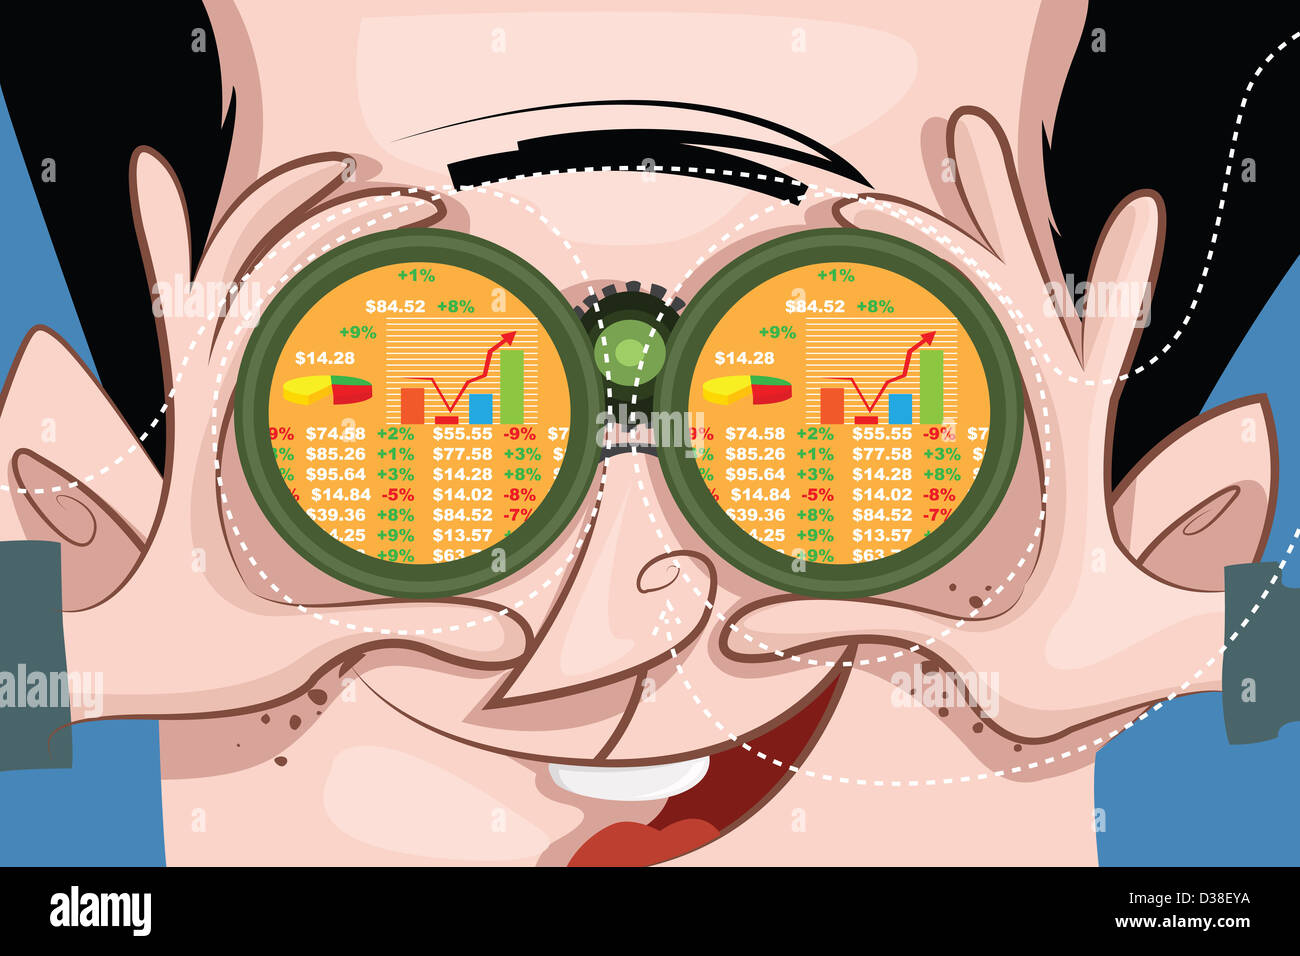 Image d'illustration de l'homme heureux en gardant une montre sur le stock market through binoculars Banque D'Images